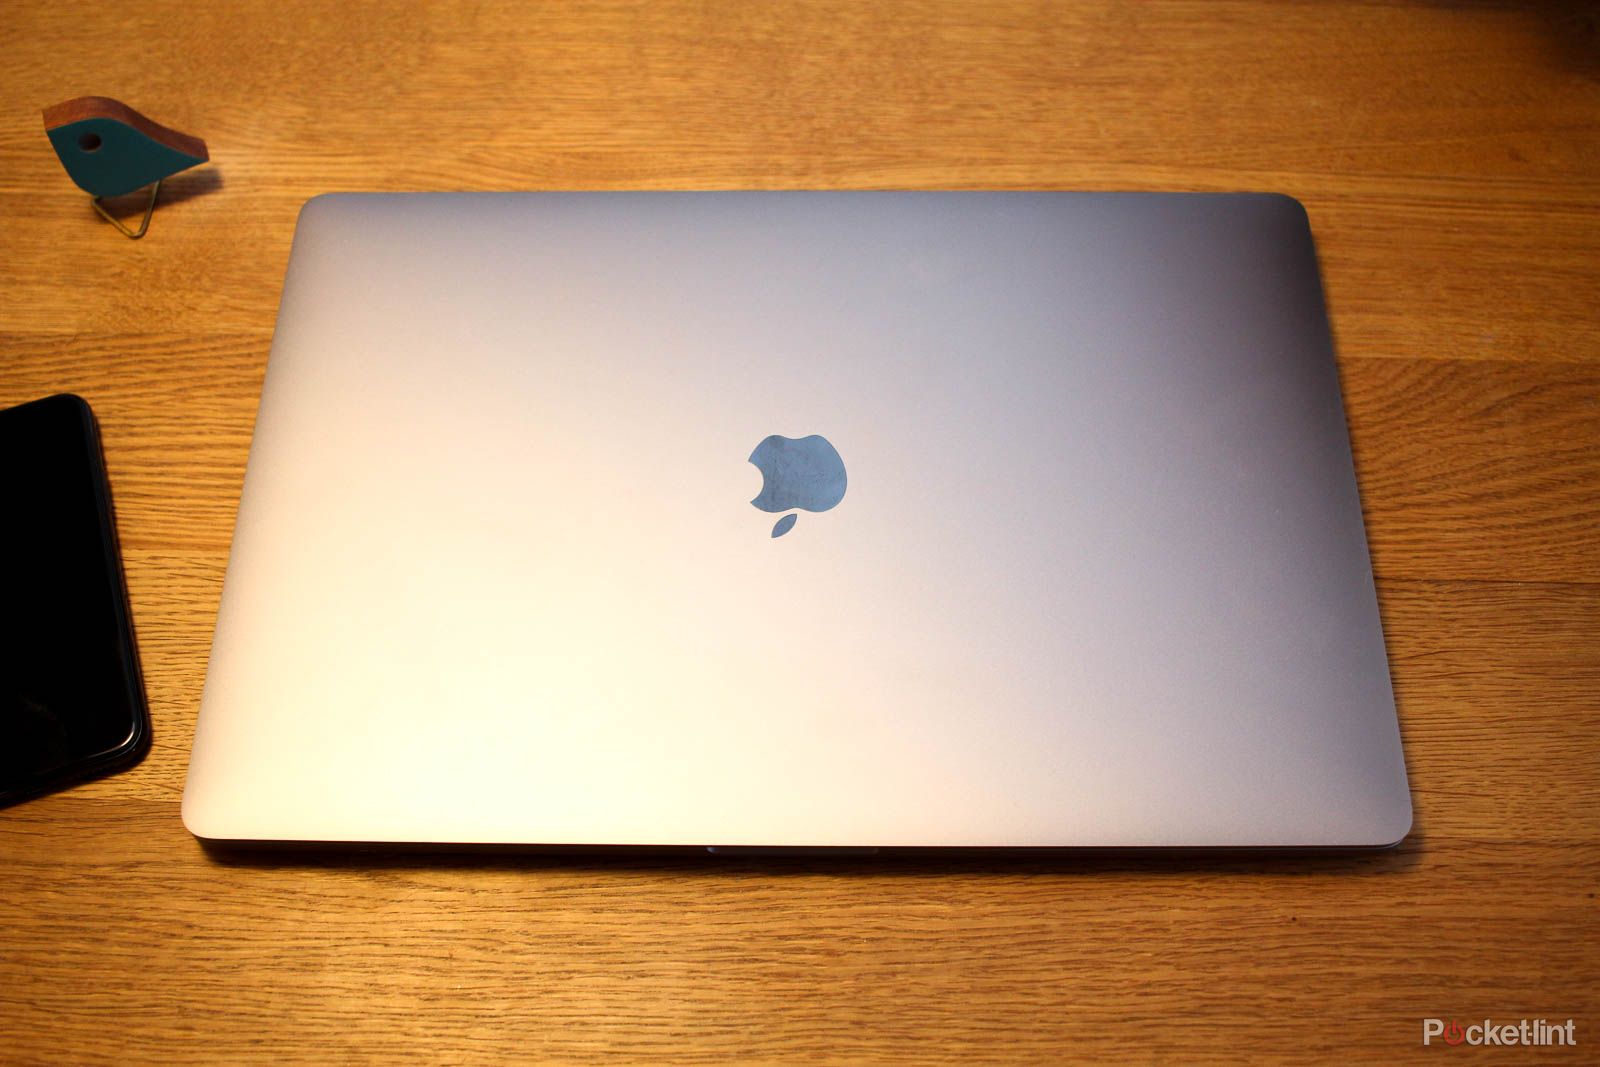 2019 16-inch MacBook Pro review: Bye-bye, butterfly